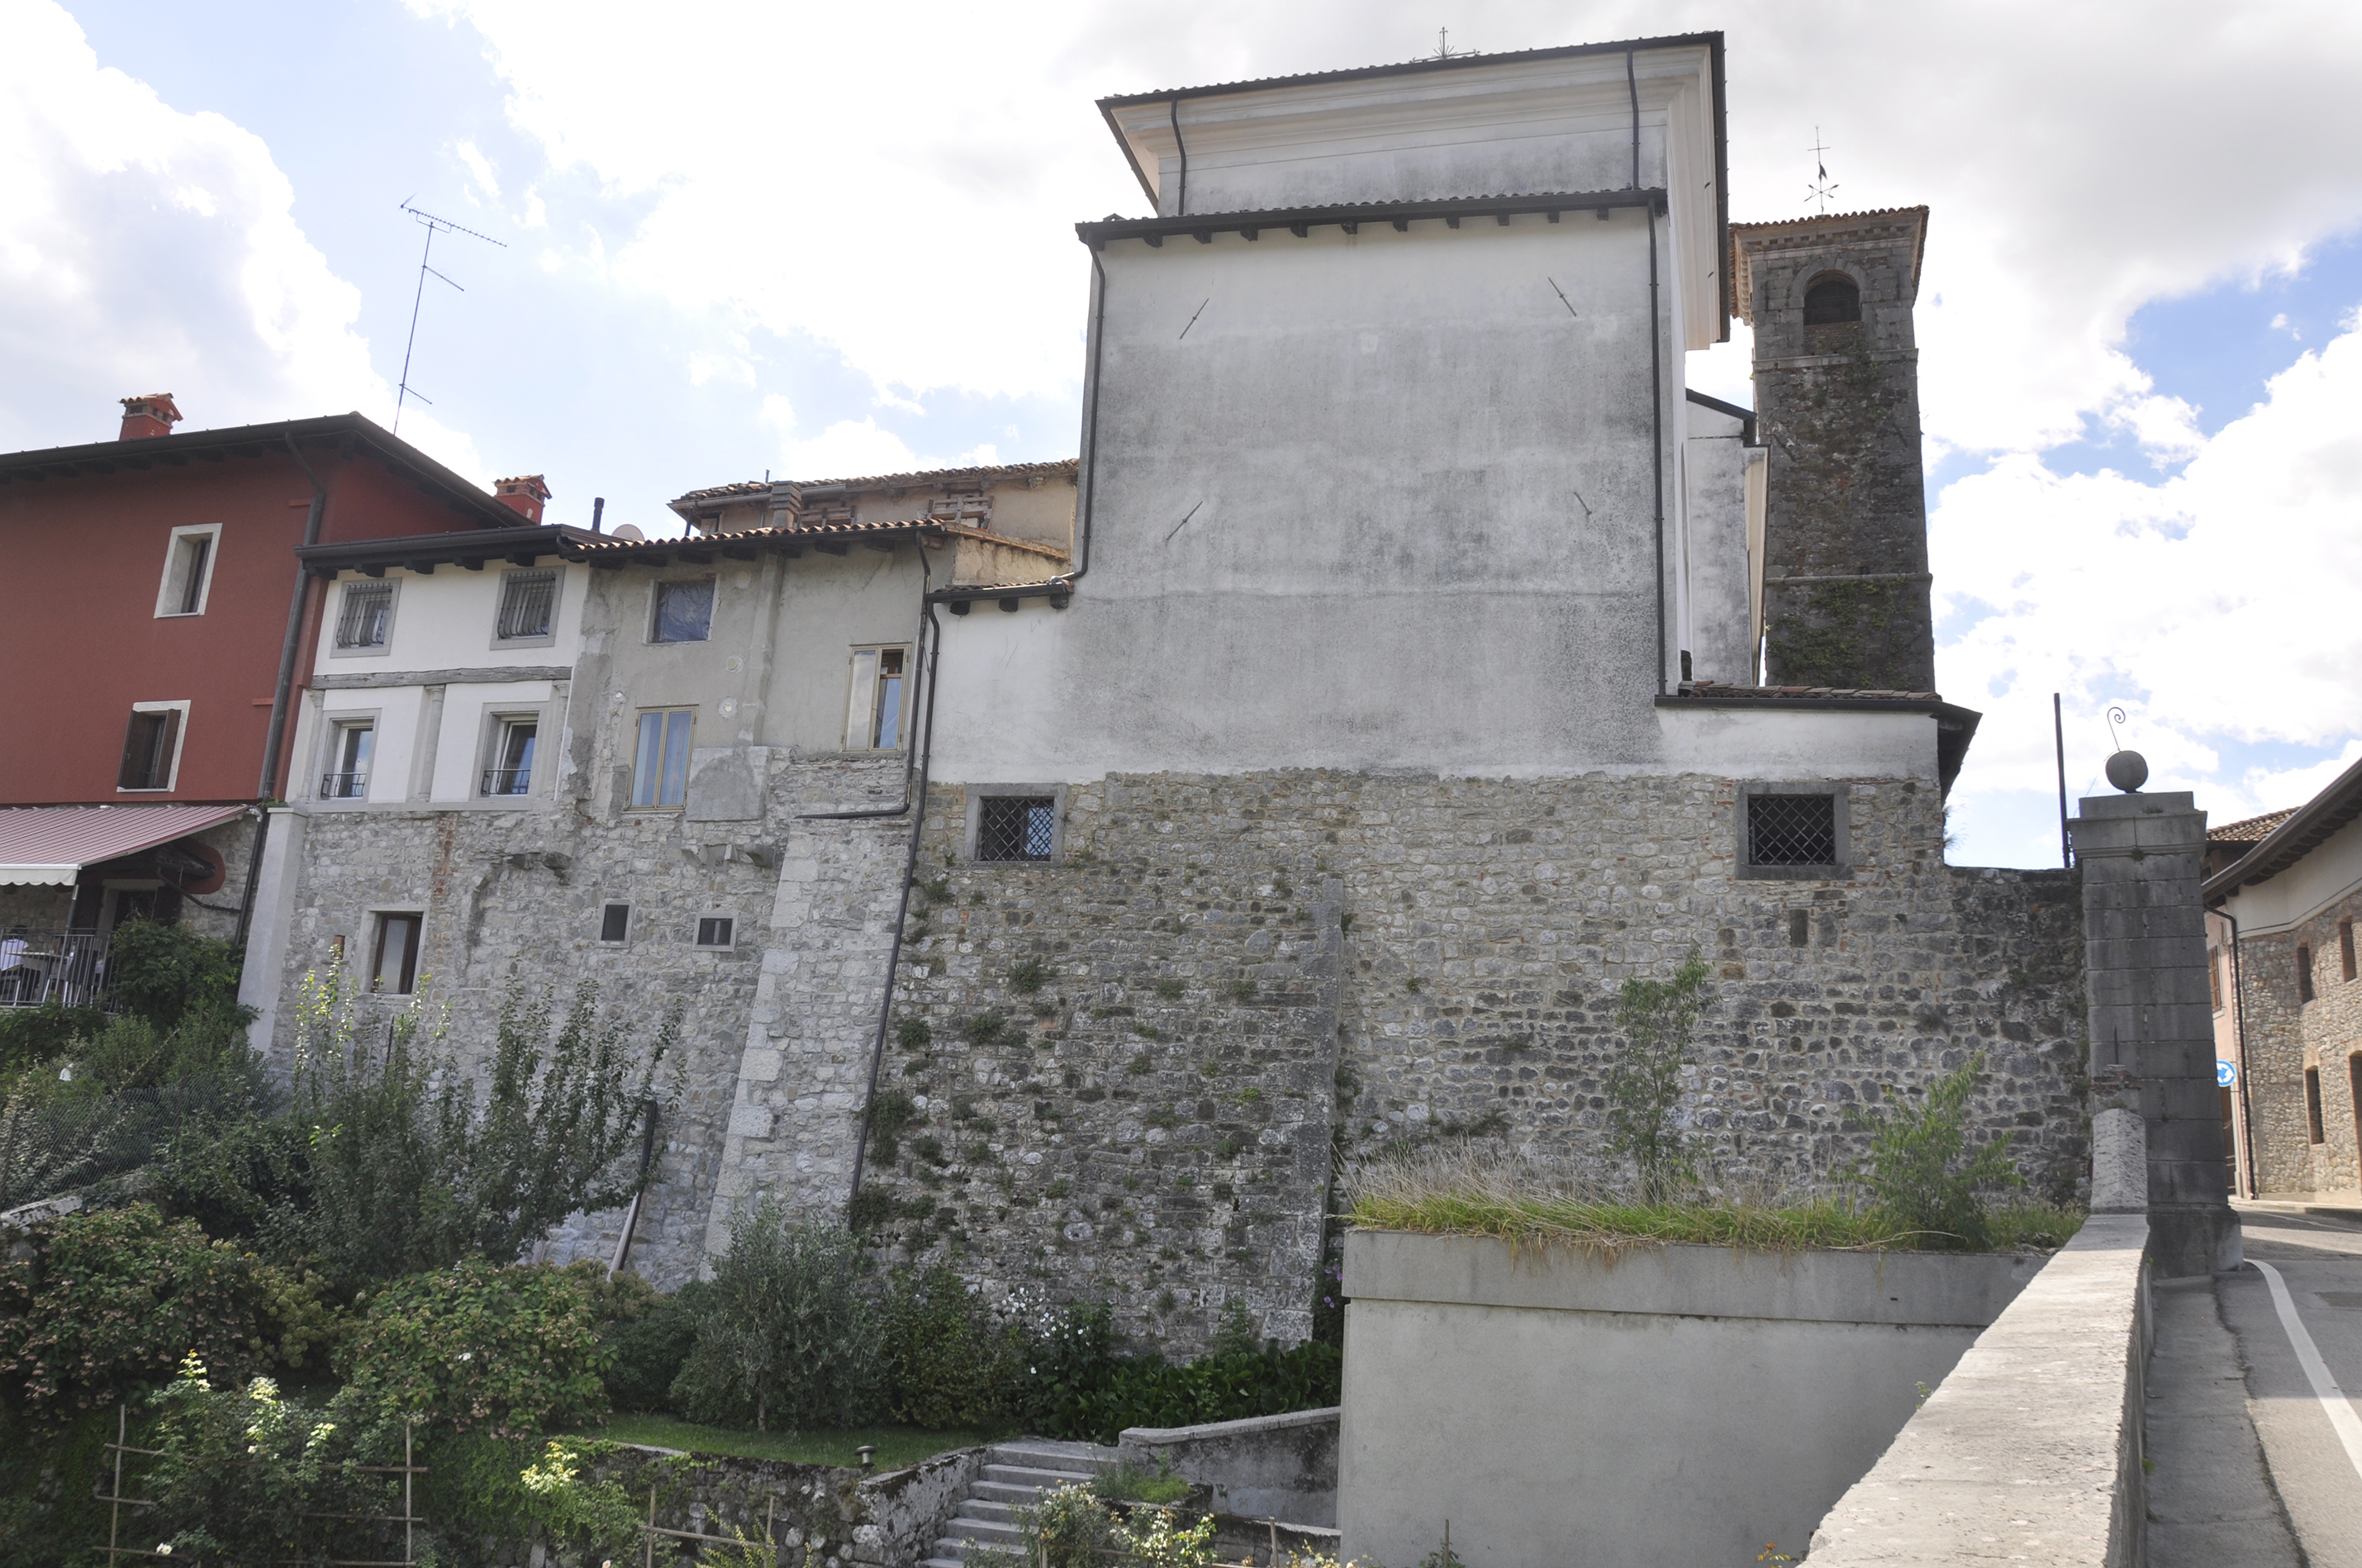 Mura tardoantiche della III cerchia urbana sul retro della chiesa di San Giovanni (mura, urbiche) - Cividale del Friuli (UD) 